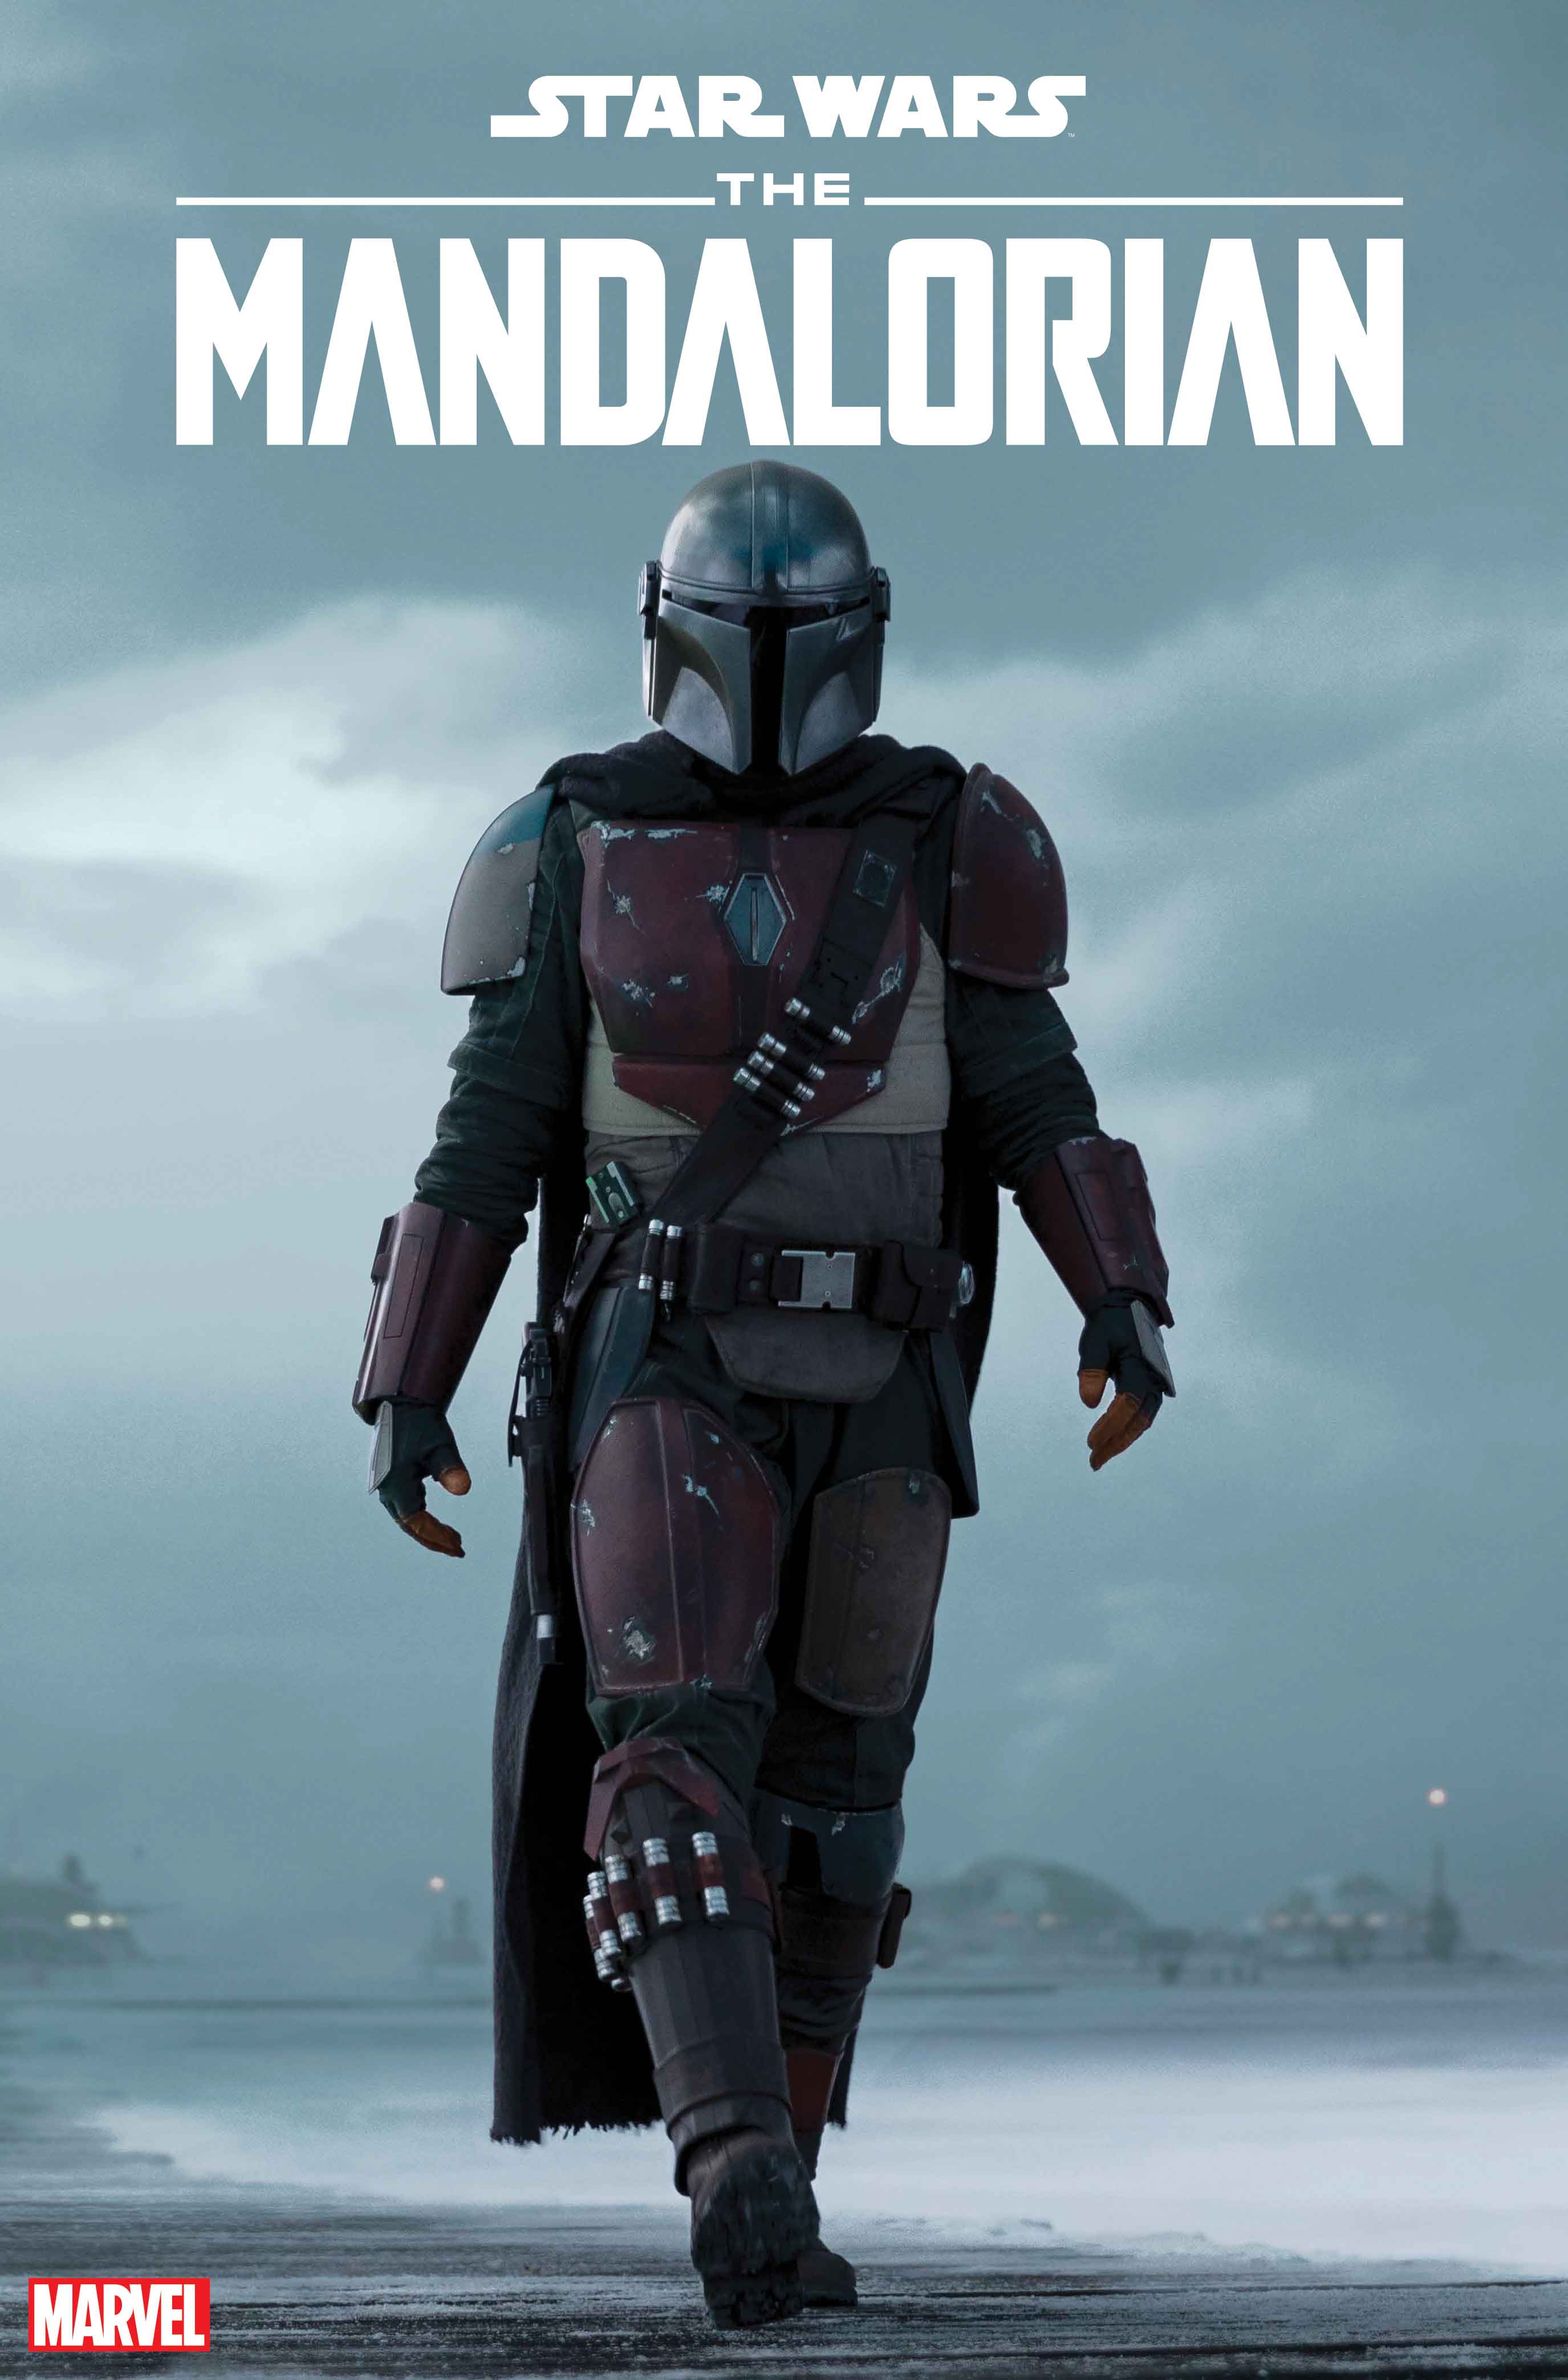 Couverture de la variante télévisée Star Wars: The Mandalorian # 1